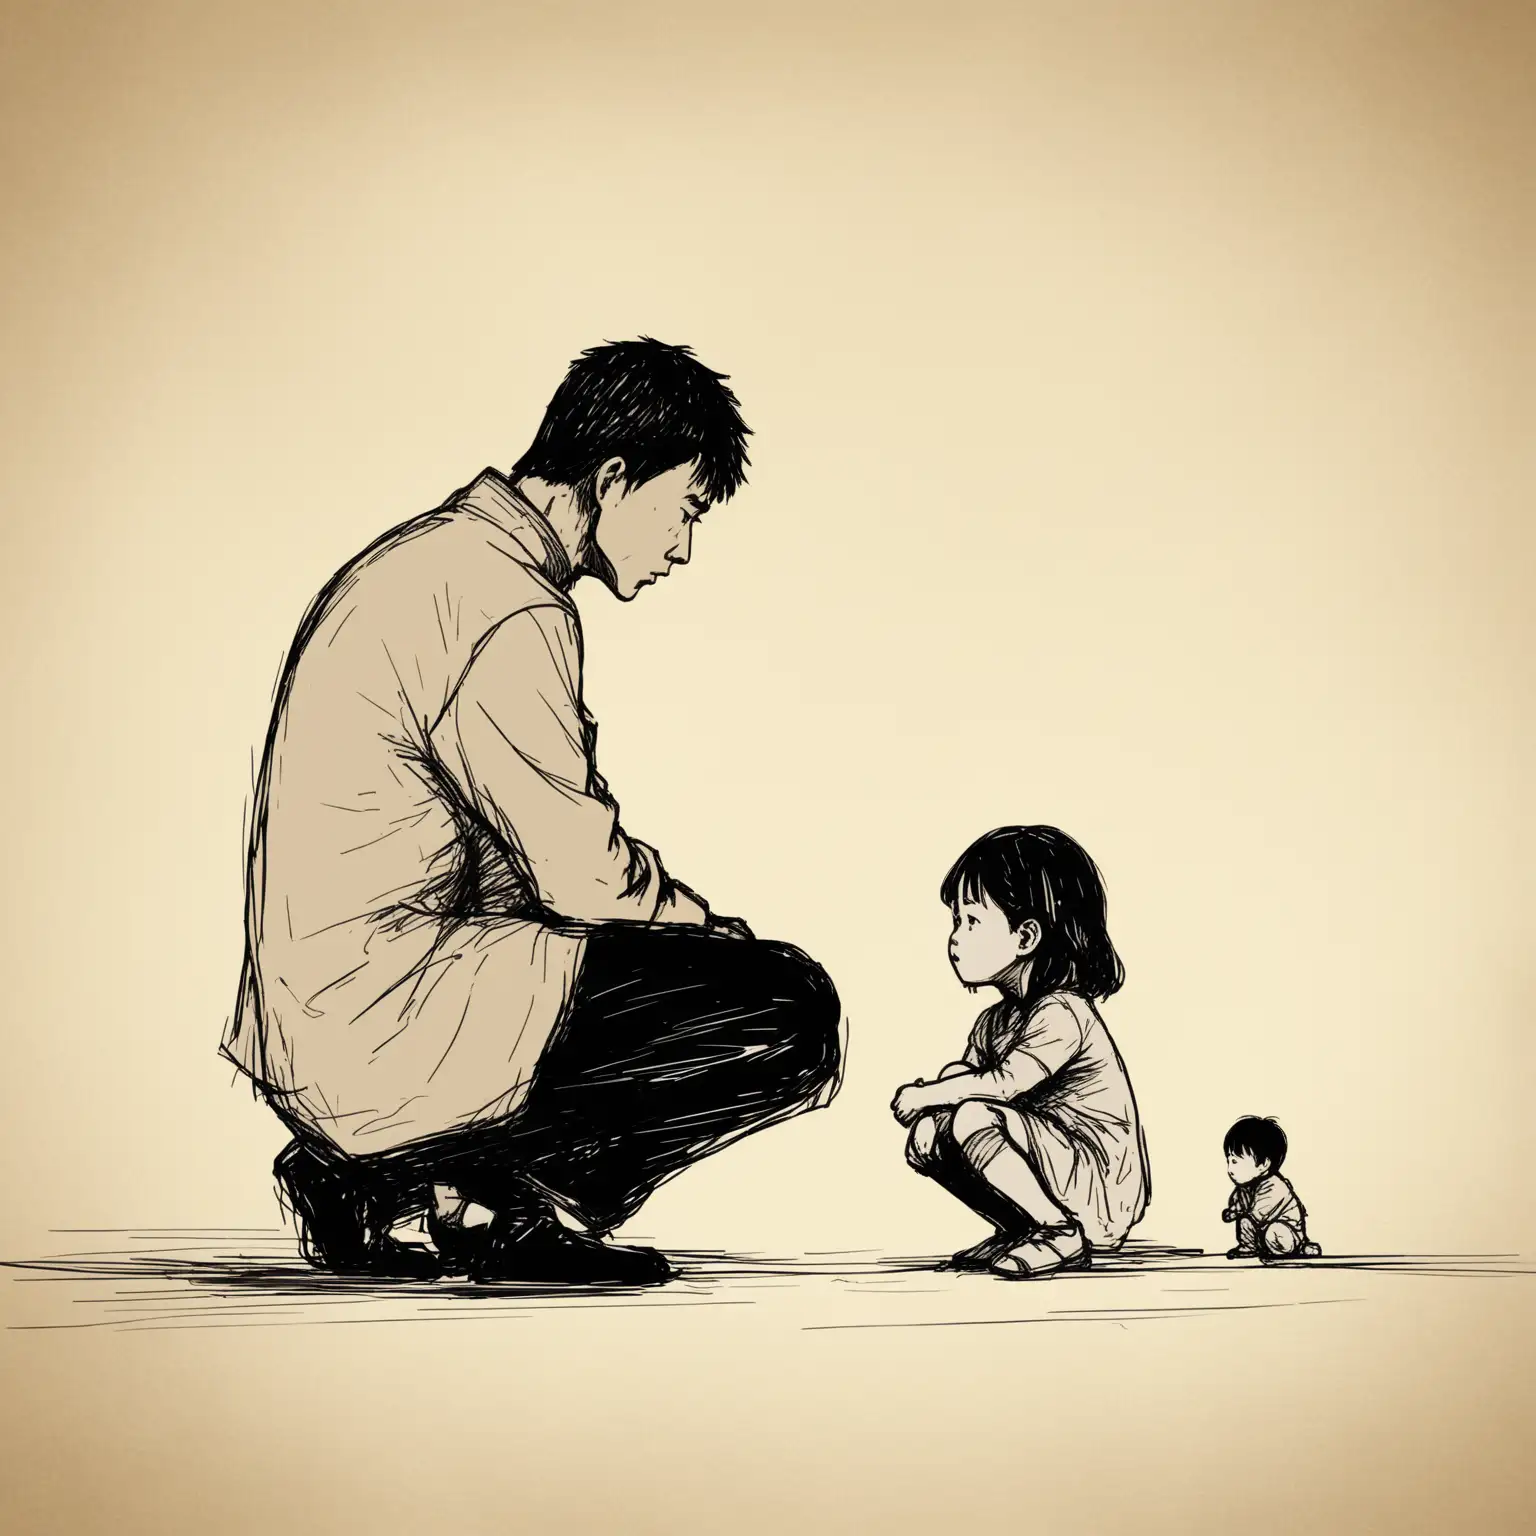 素描风格，一个亚洲男性和一个亚洲女性在对峙，在一旁蹲着一个孩子很失落，以柔和的浅棕色为特色，背景具有微妙的纹理。16:9